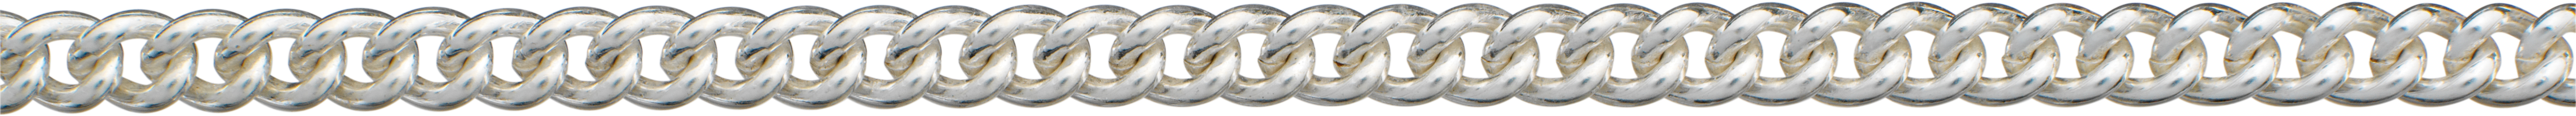 Pancerka okrągła srebro 925/- 4,20mm, grubość drutu 1,20mm